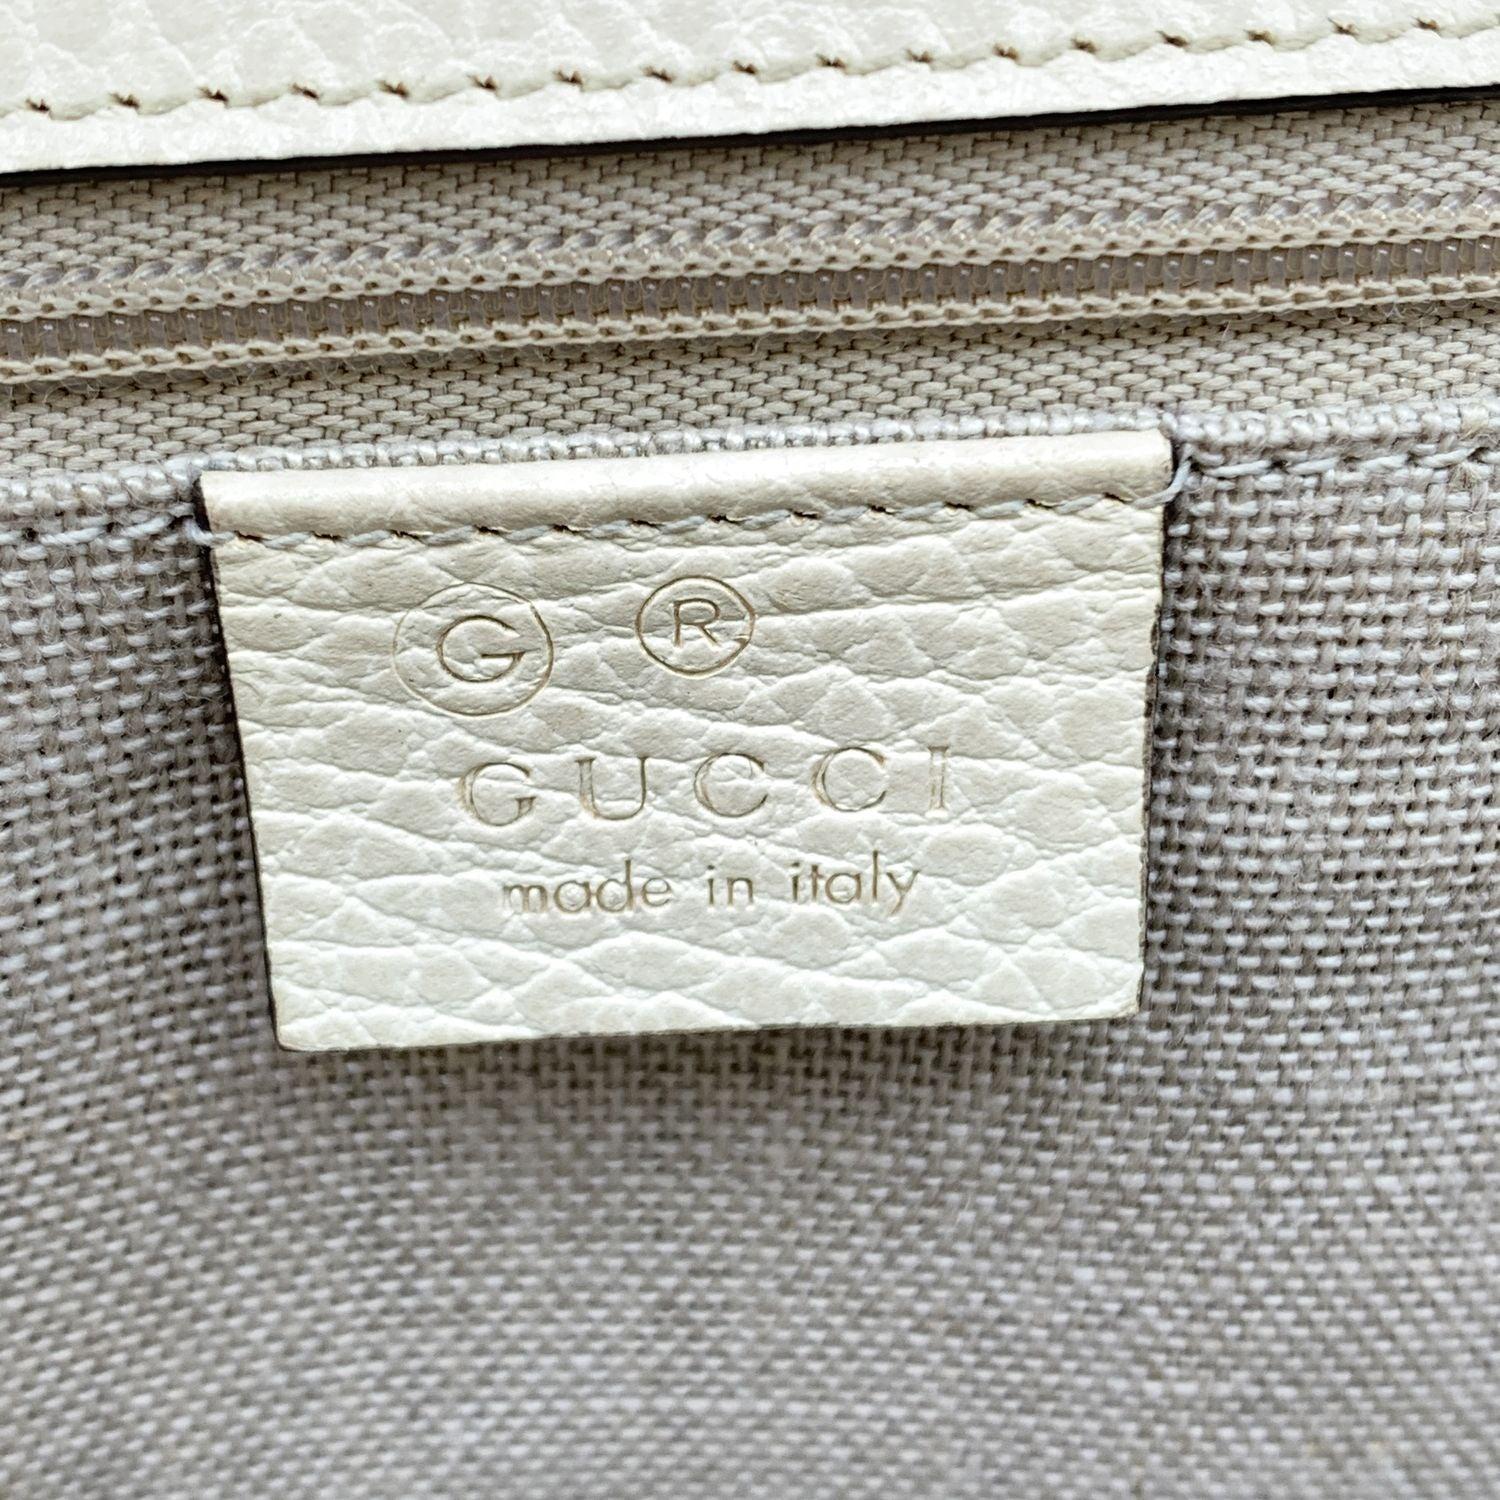 Gucci Beige Leather GG Interlocking Dollar Crossbody Bag 3